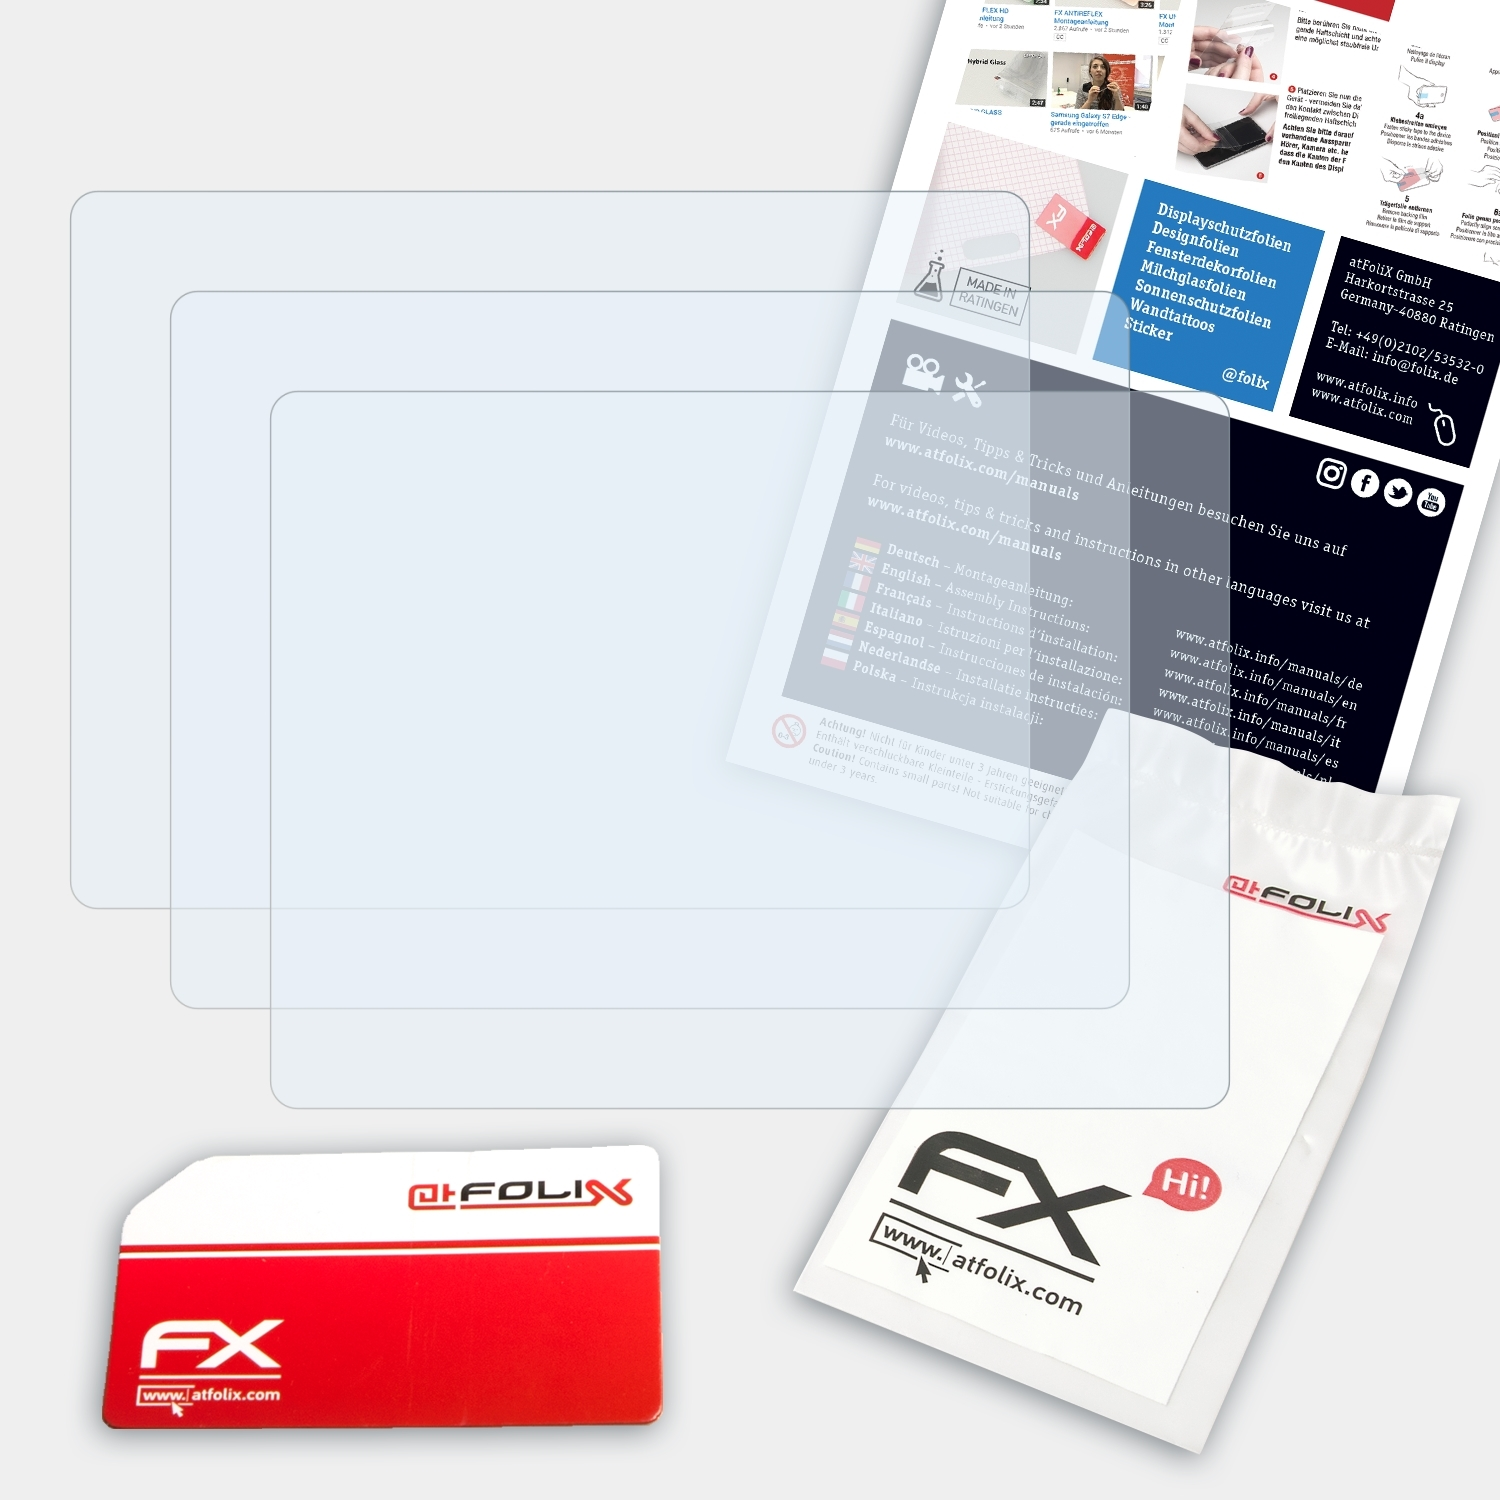 3x nüvi ATFOLIX 550) Garmin FX-Clear Displayschutz(für